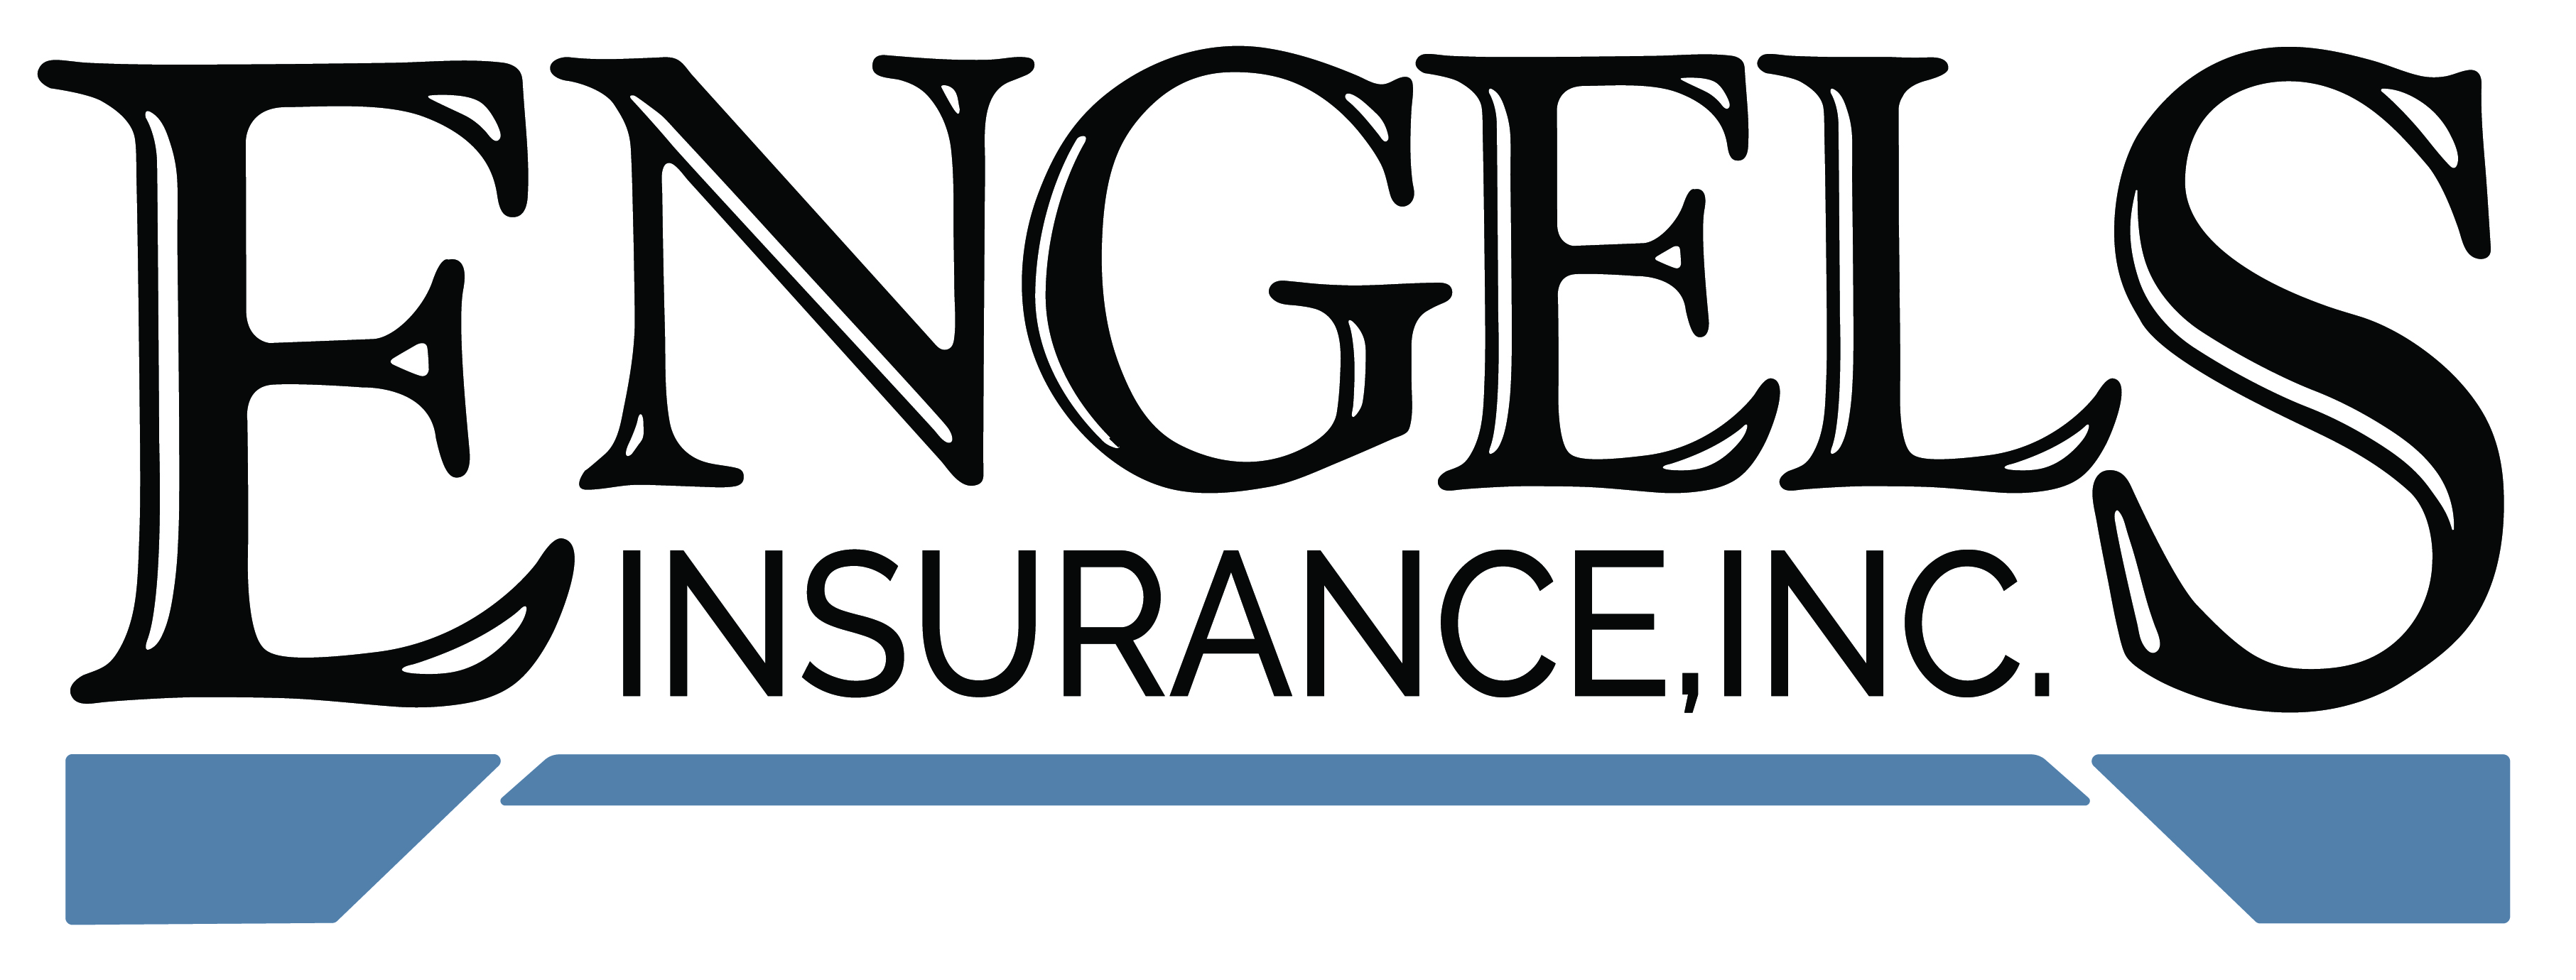 Engels Insurance Inc.